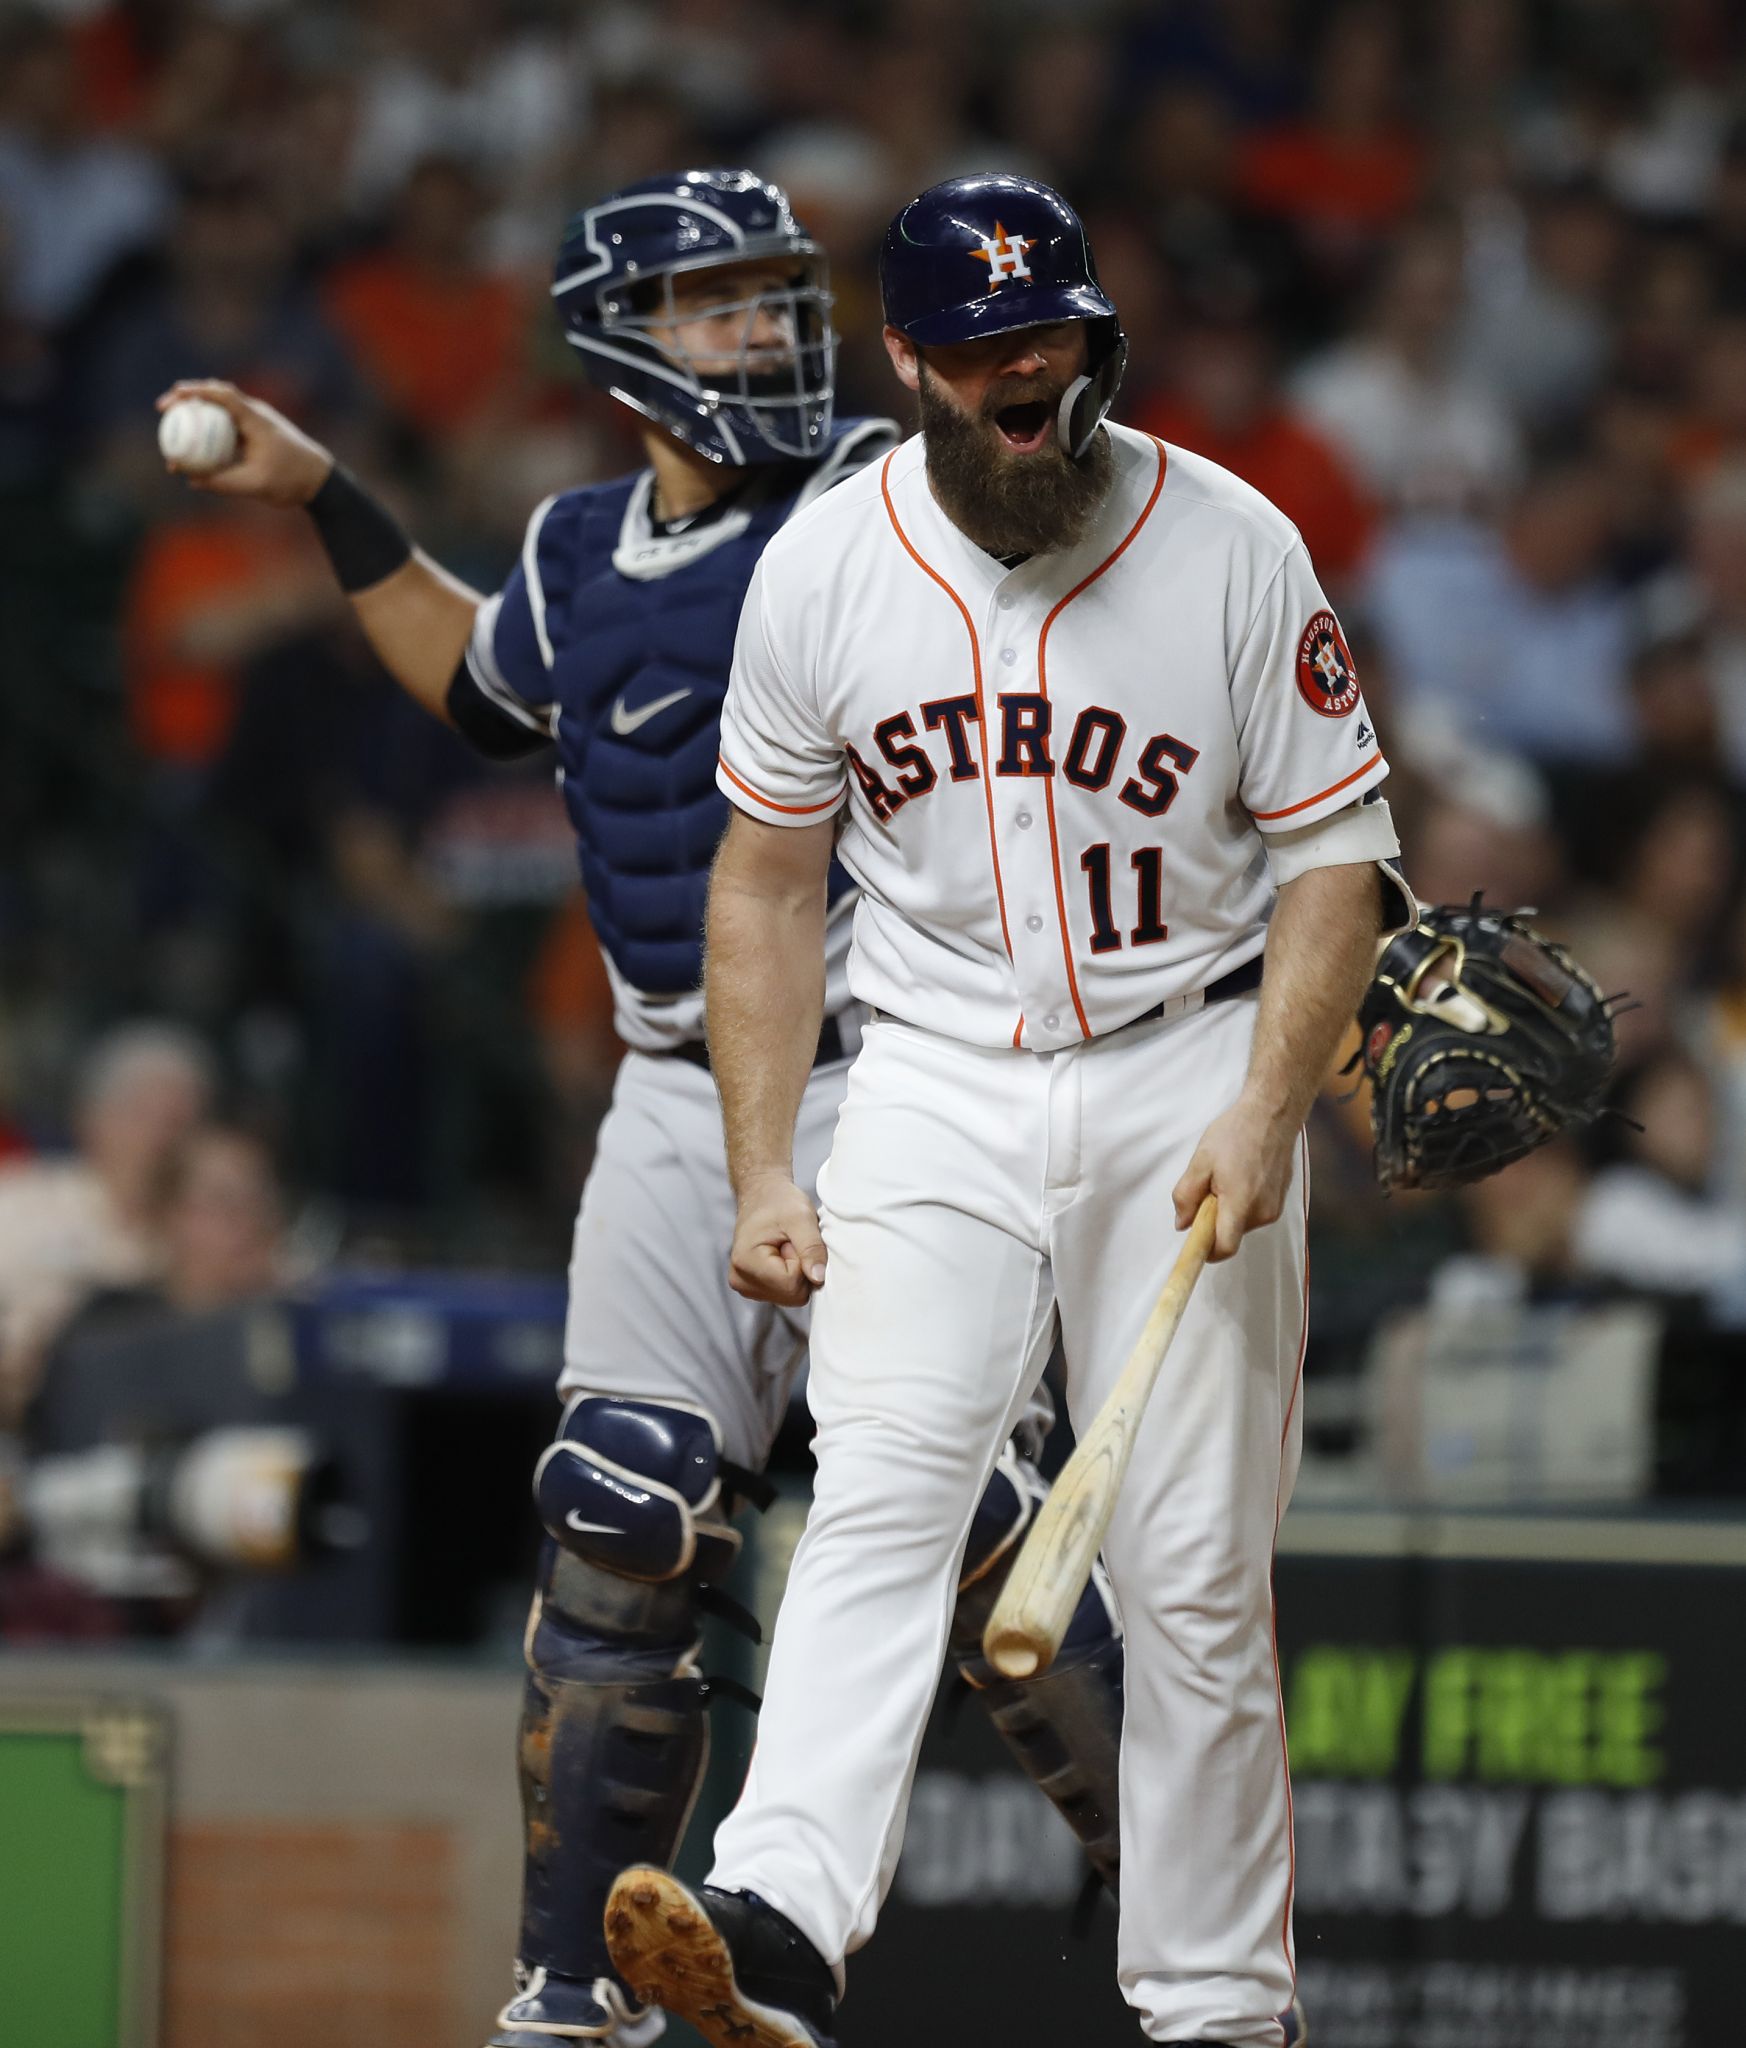 Gattis goes deep twice as Astros top Yankees - ABC13 Houston